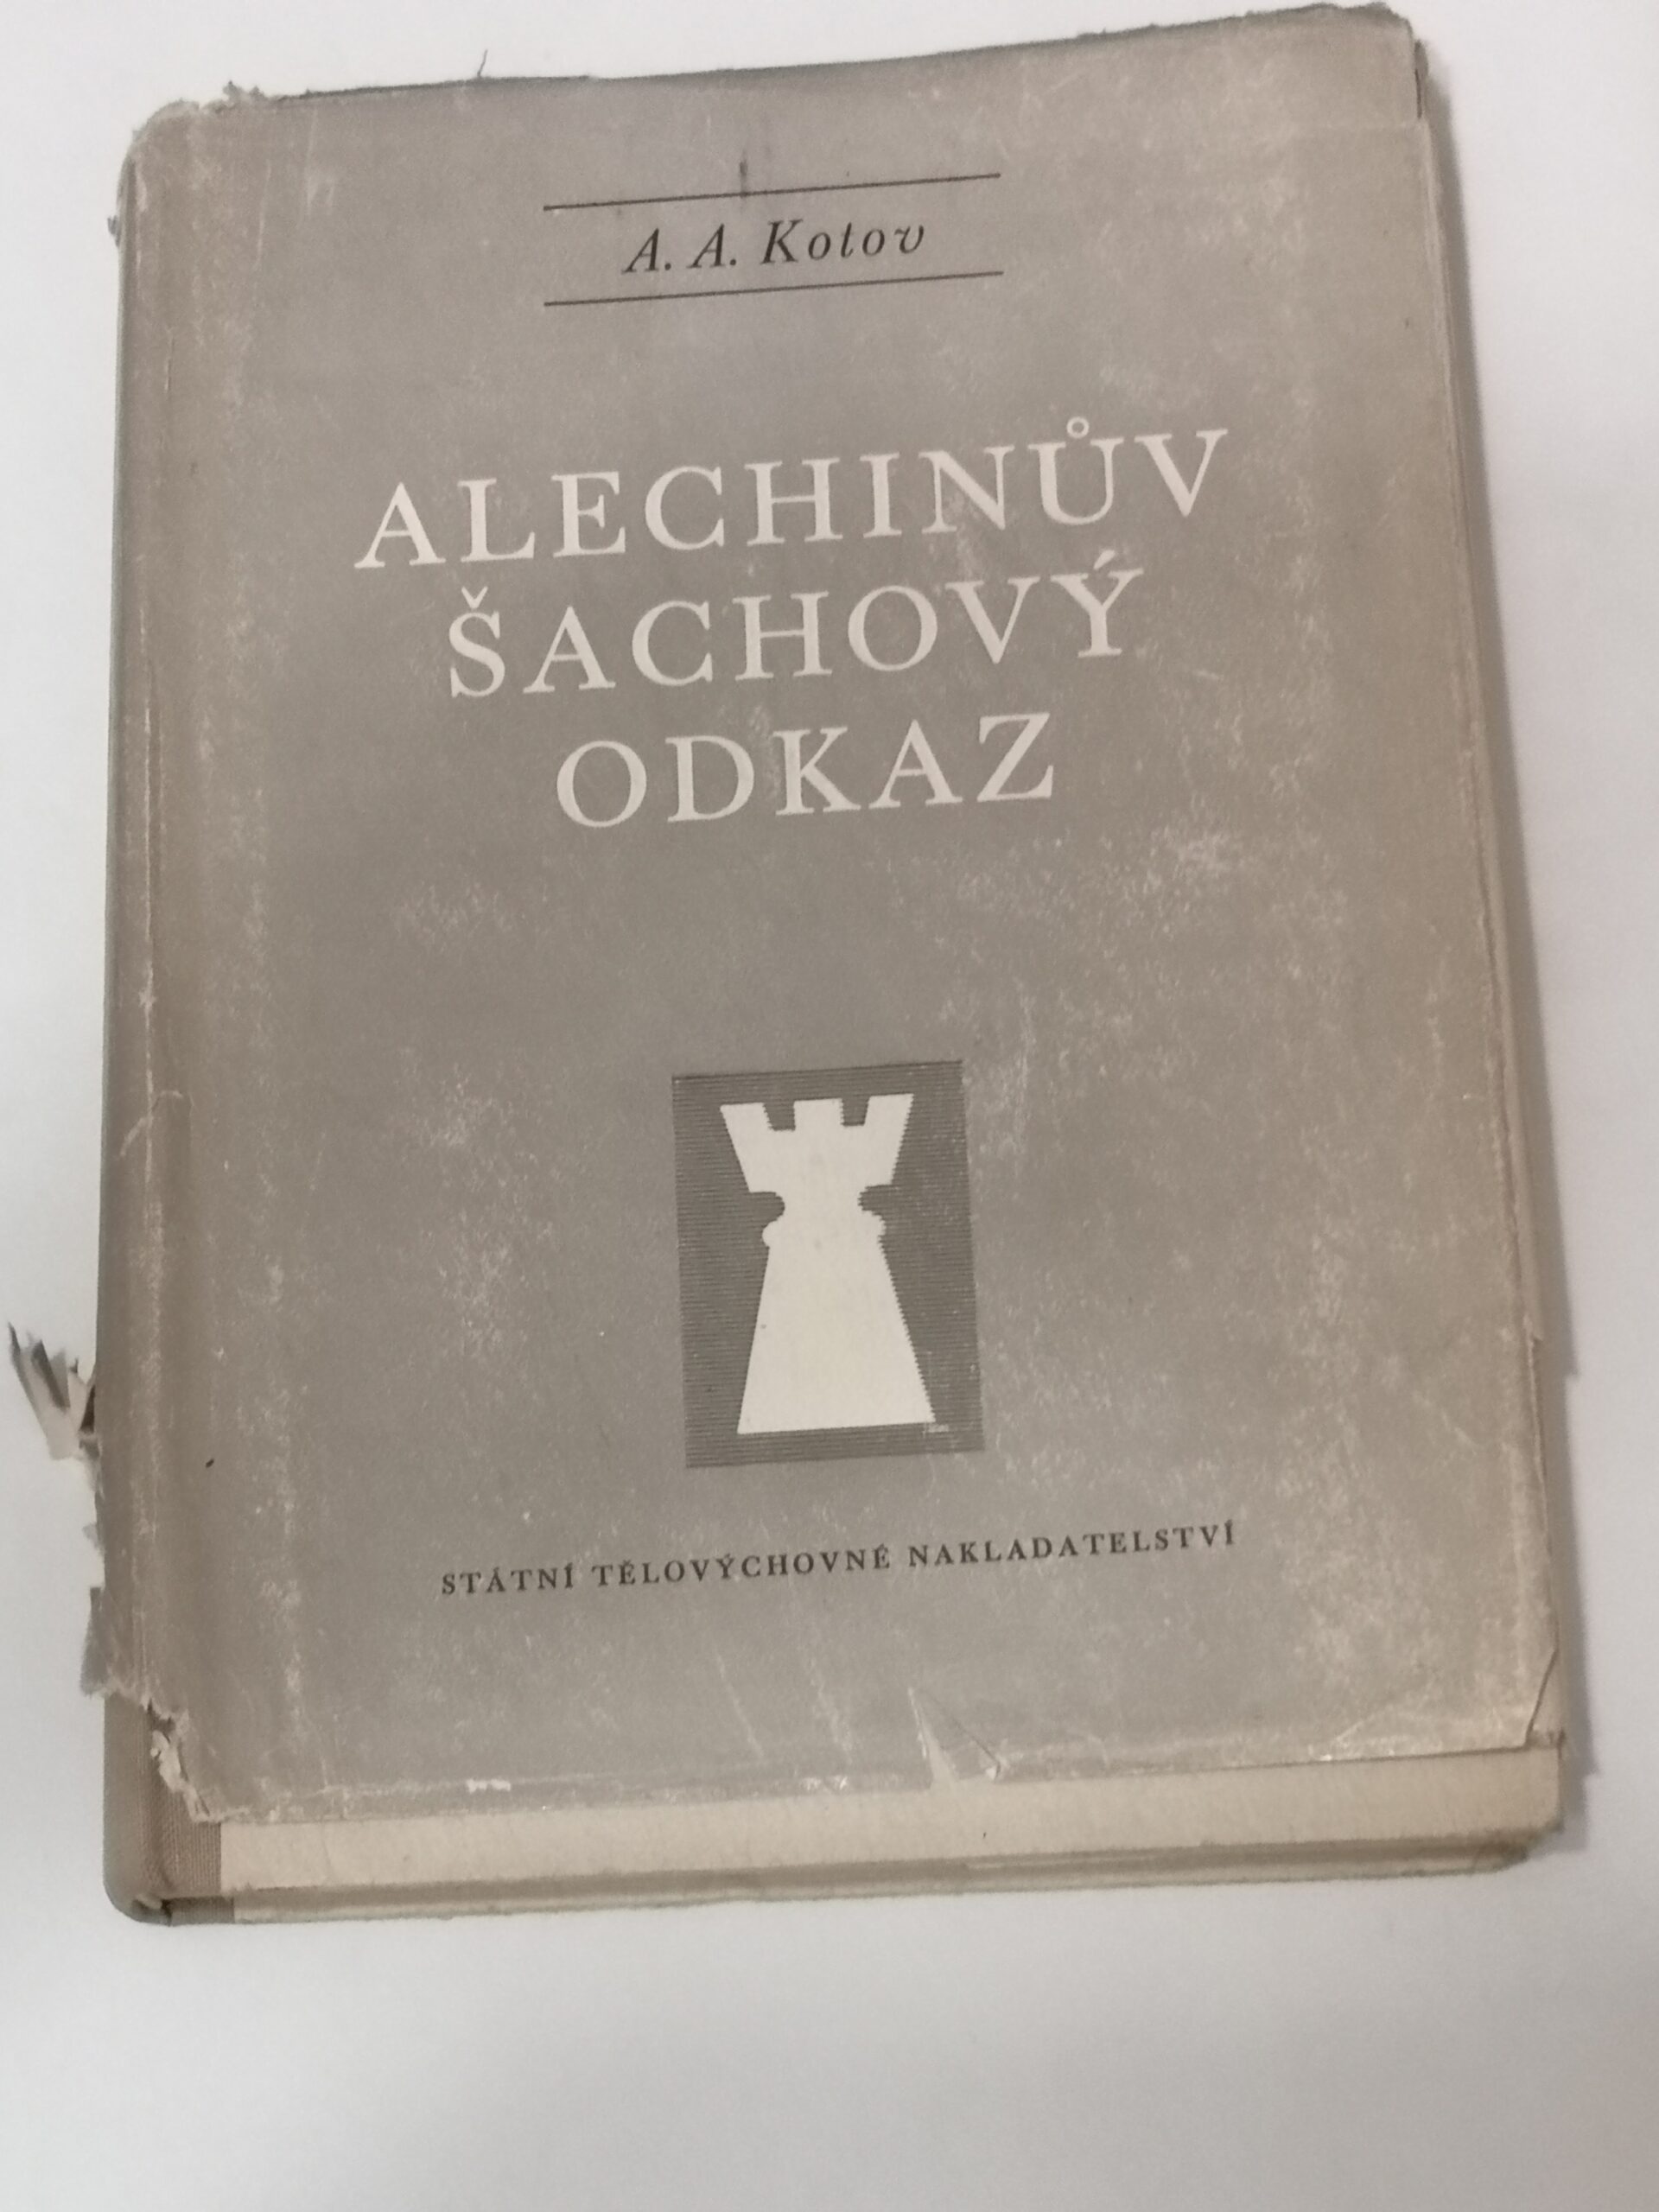 715# Alechinuv Sachovy Odkaz I DIL (A.Kotov) TOM 1